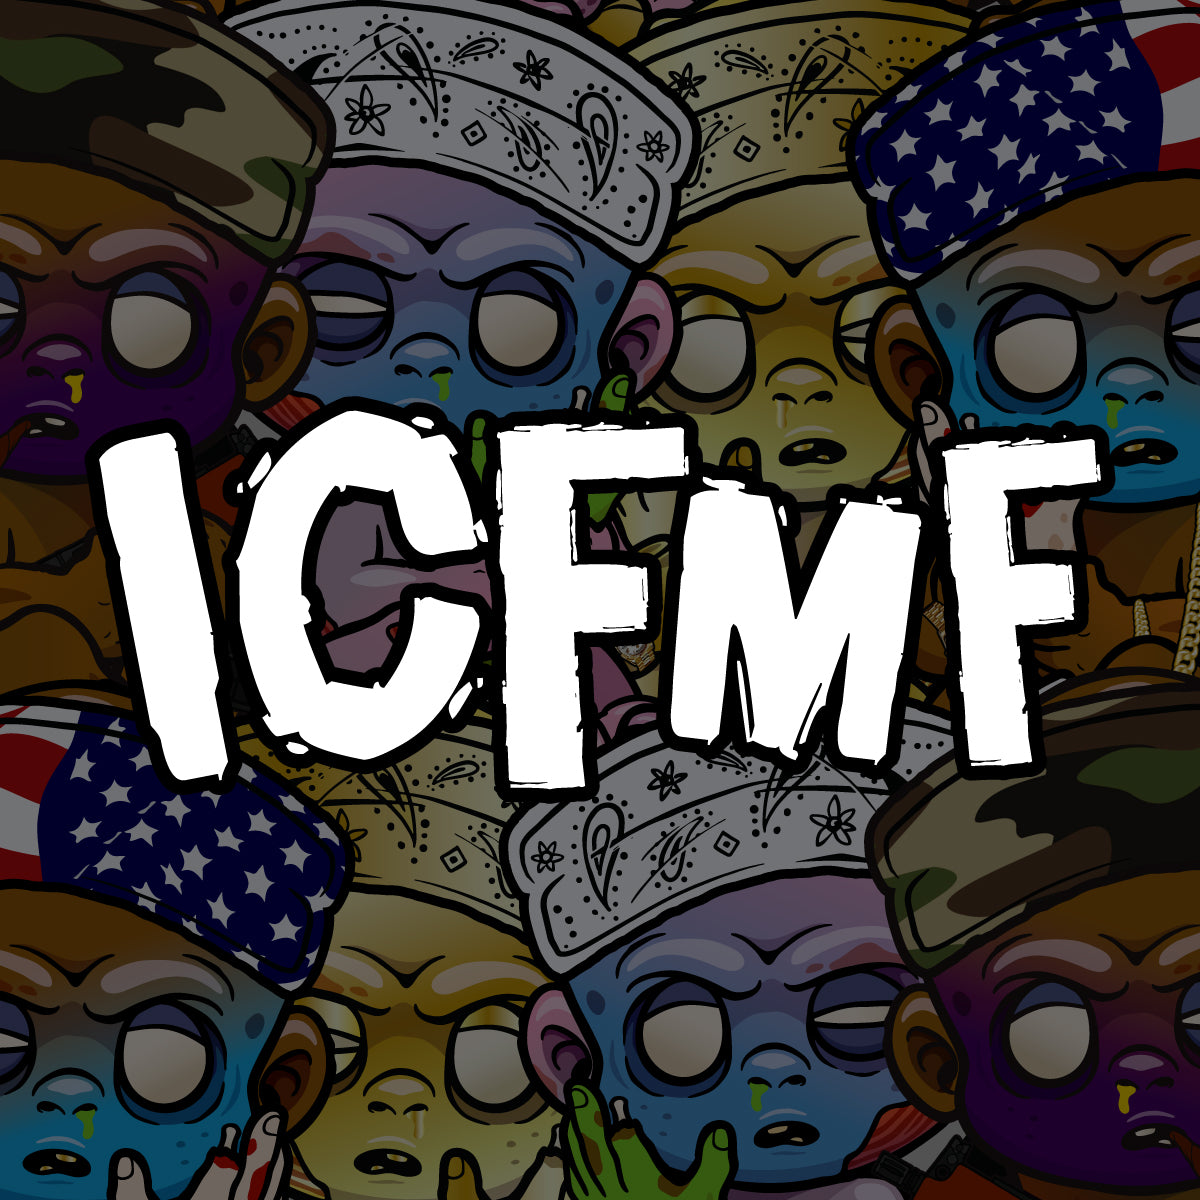 ICFMF